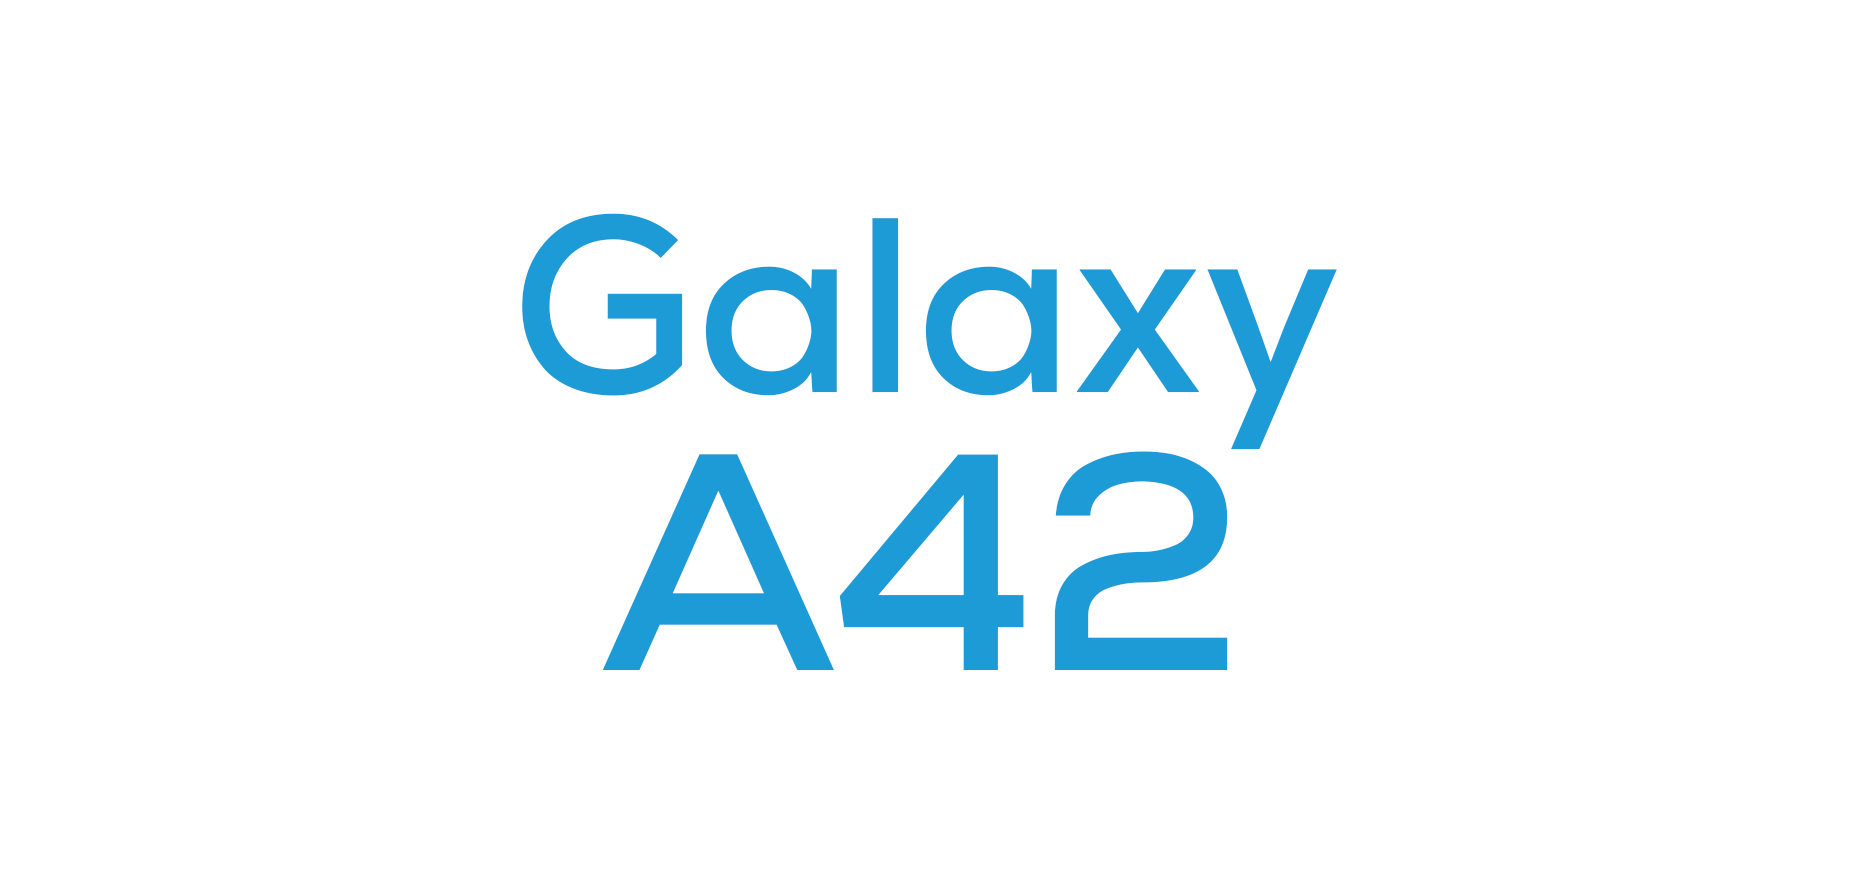 Galaxy A42 5G Cases